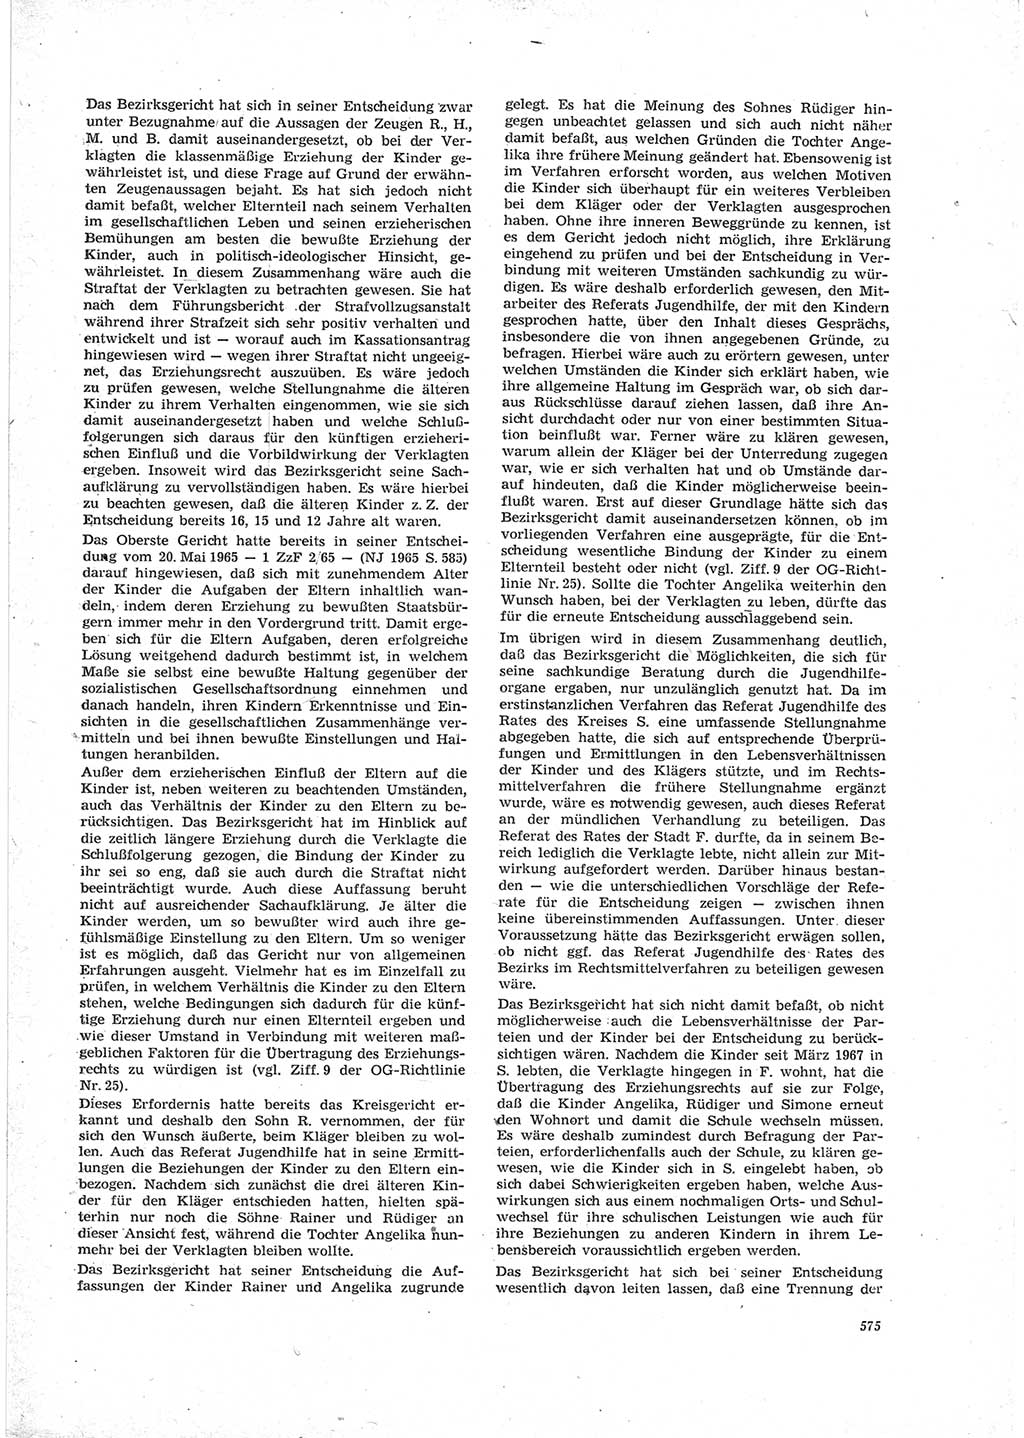 Neue Justiz (NJ), Zeitschrift für Recht und Rechtswissenschaft [Deutsche Demokratische Republik (DDR)], 23. Jahrgang 1969, Seite 575 (NJ DDR 1969, S. 575)